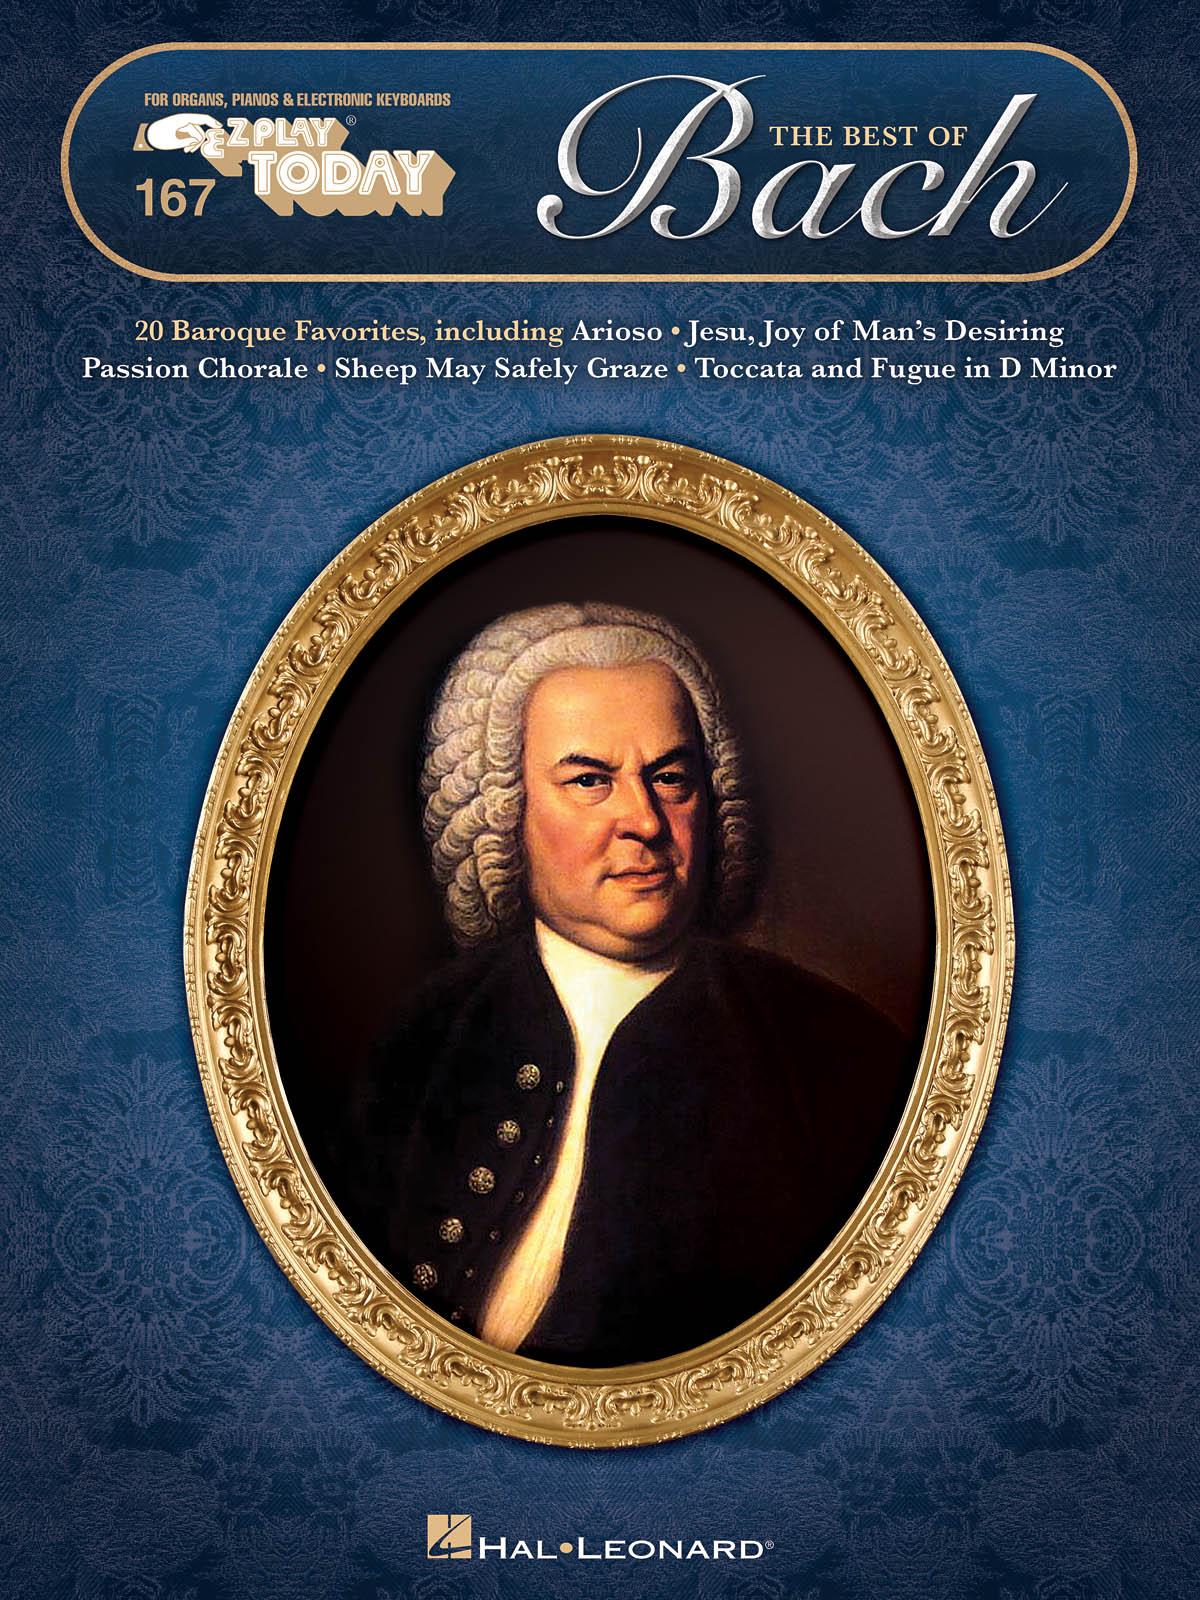 The Best of Bach - E-Z Play Today Volume 167 - noty pro klavír nebo keyboard